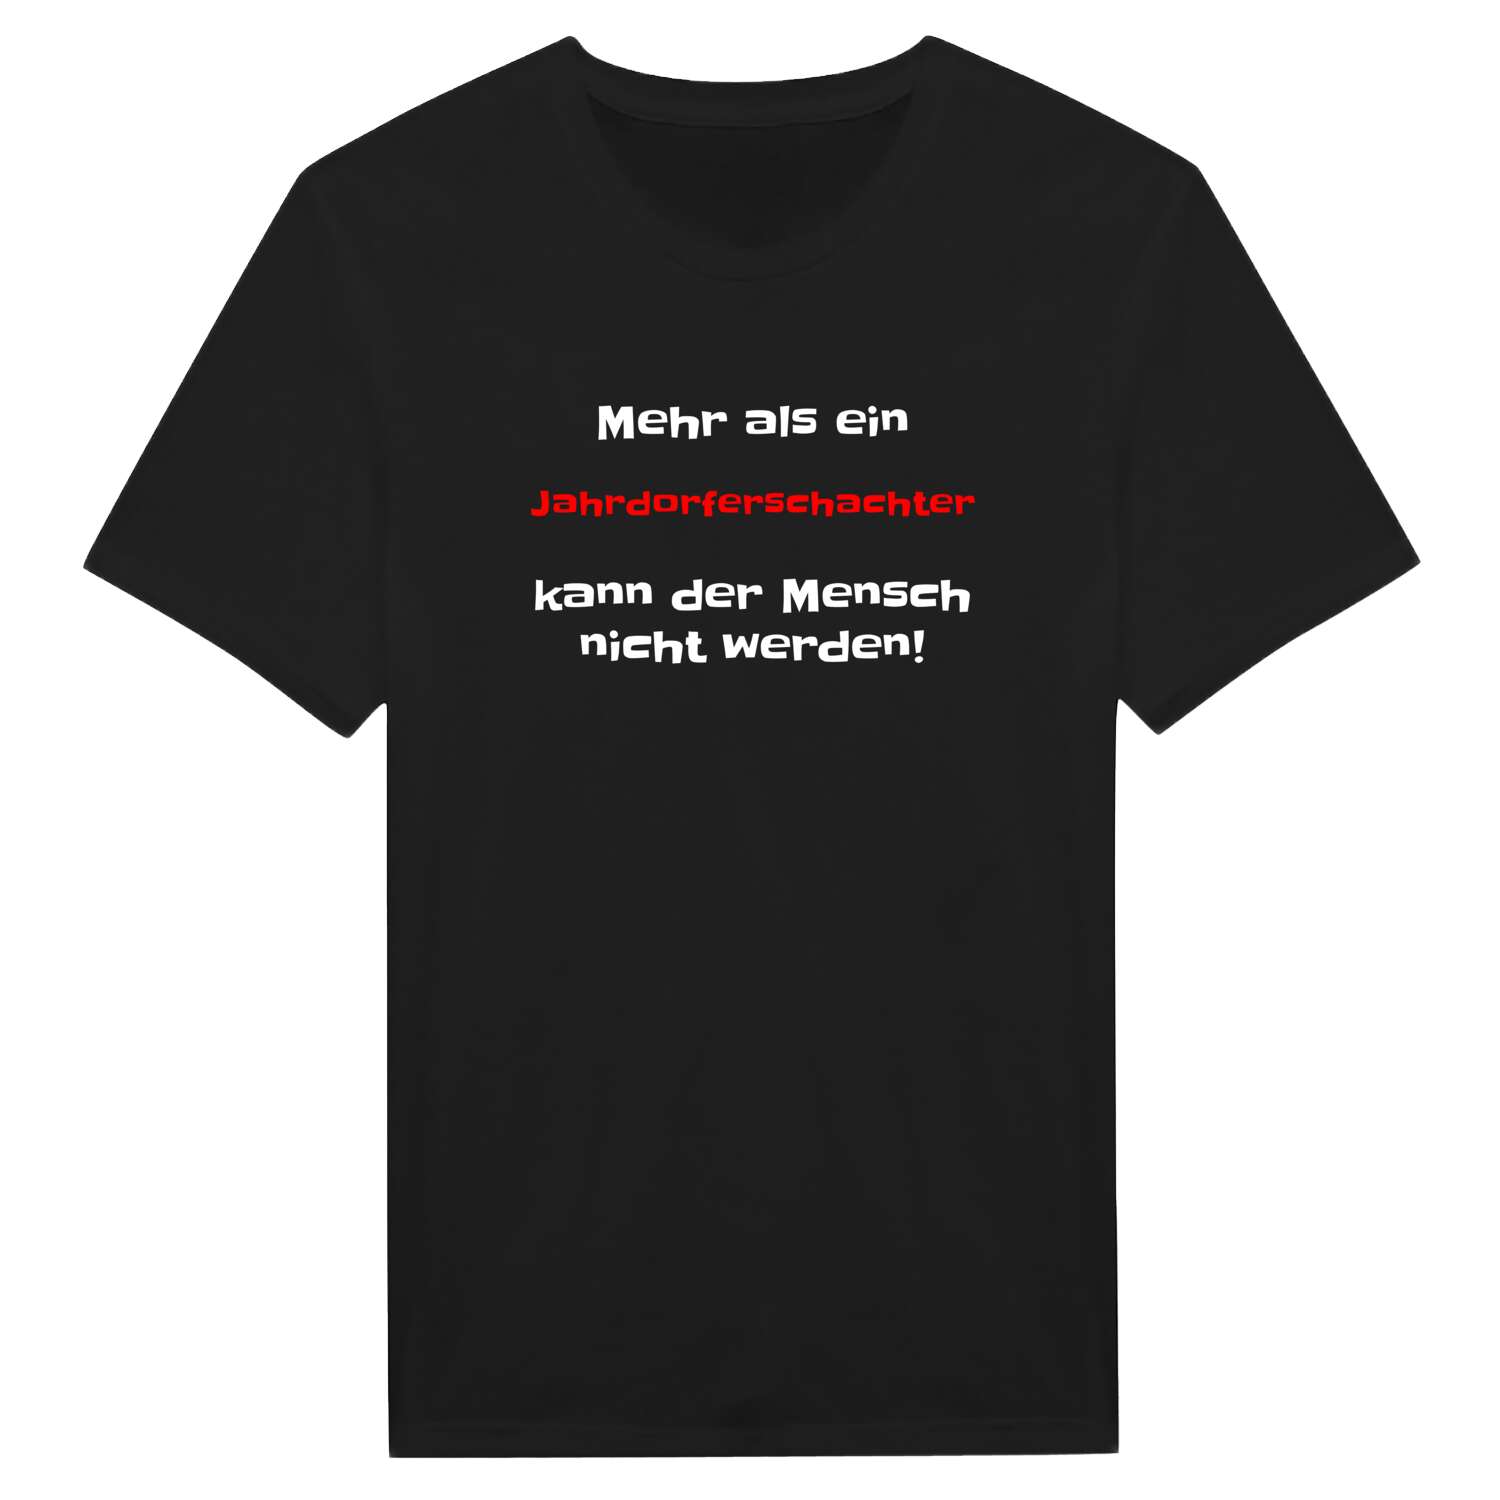 Jahrdorferschacht T-Shirt »Mehr als ein«